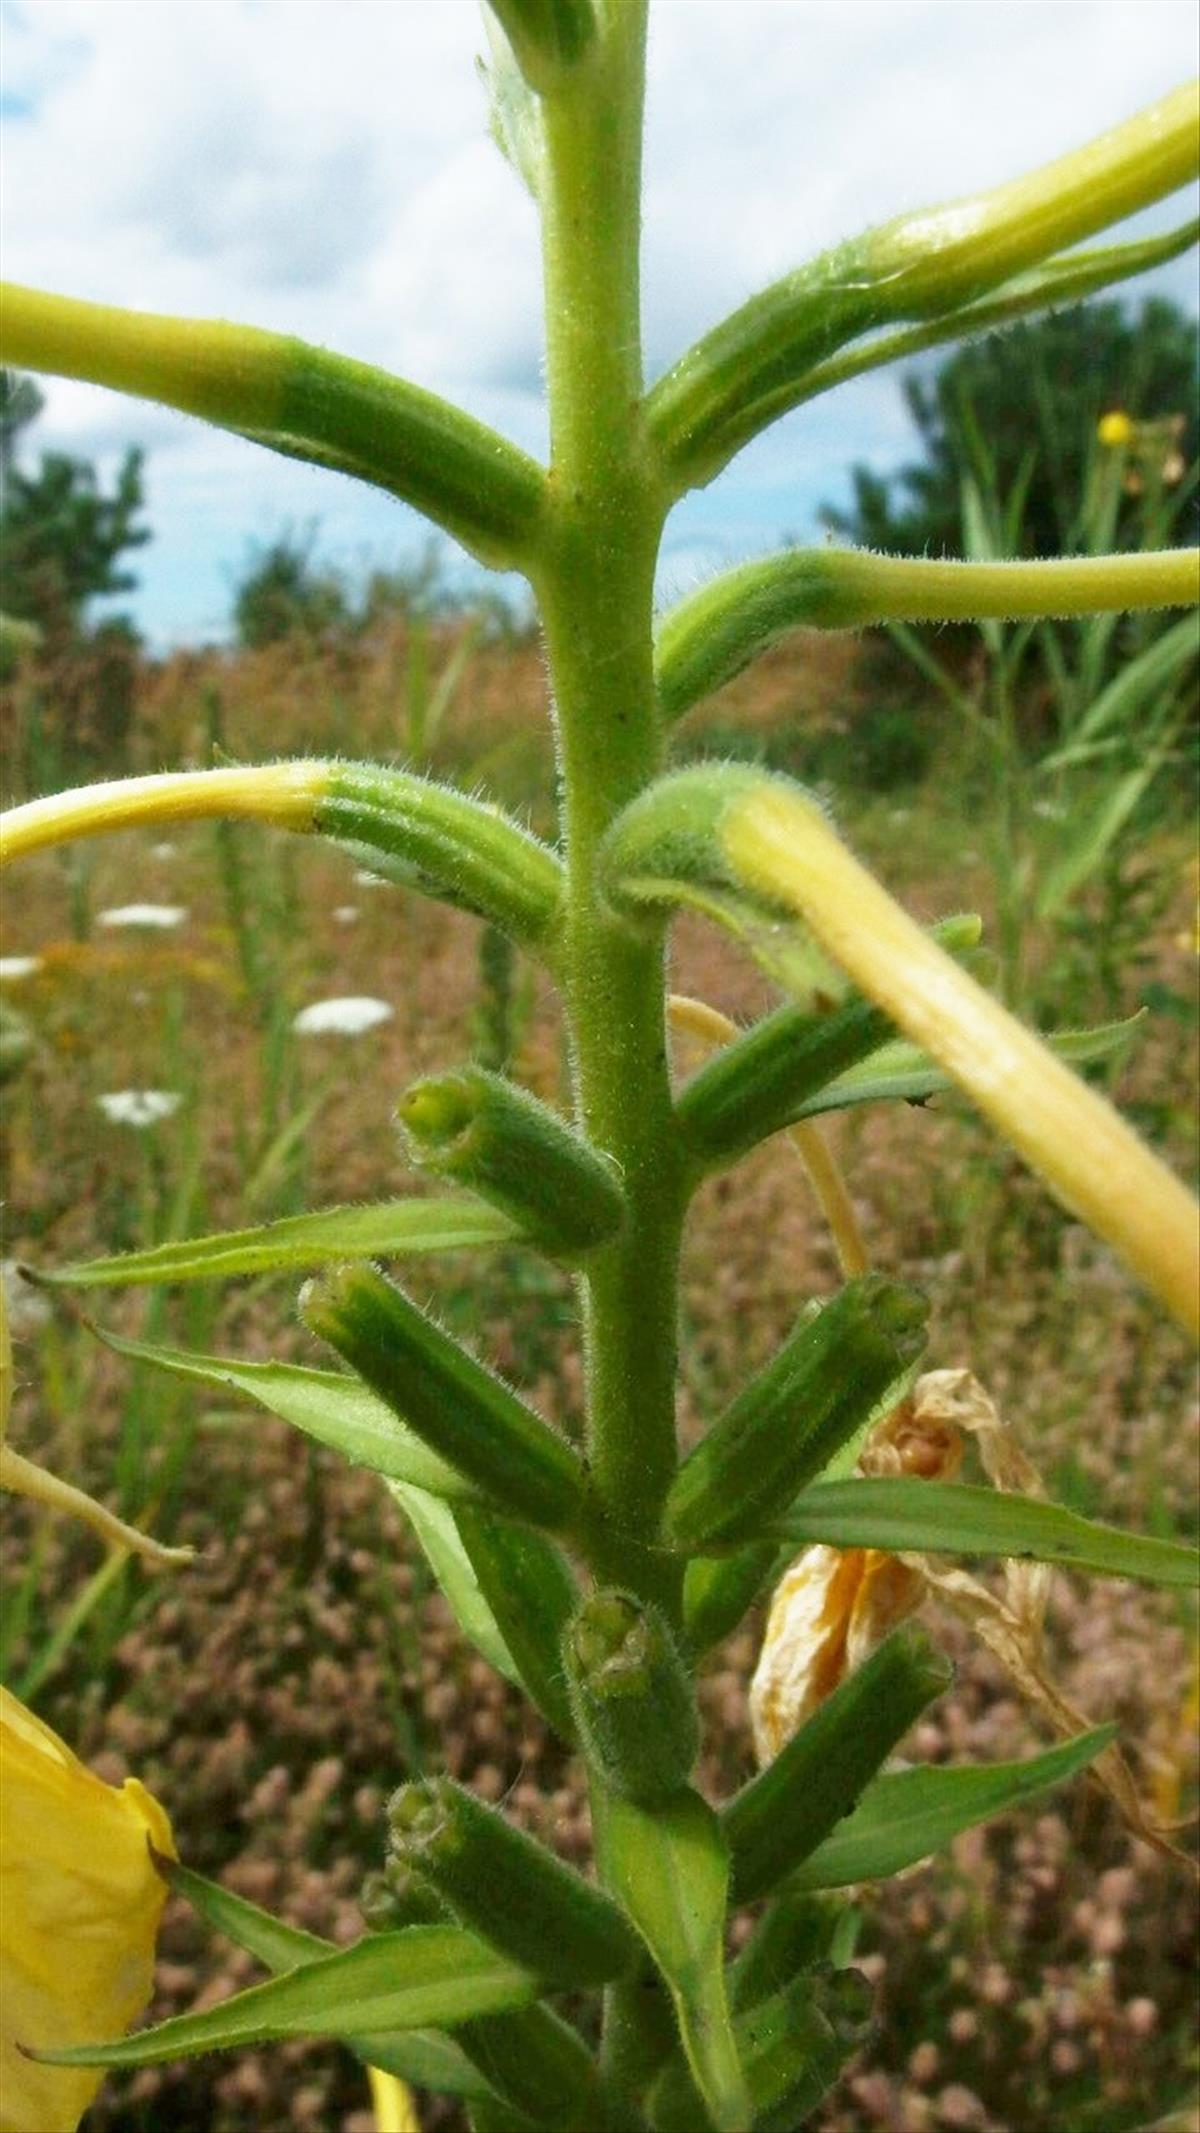 Oenothera oehlkersii (door Sipke Gonggrijp)